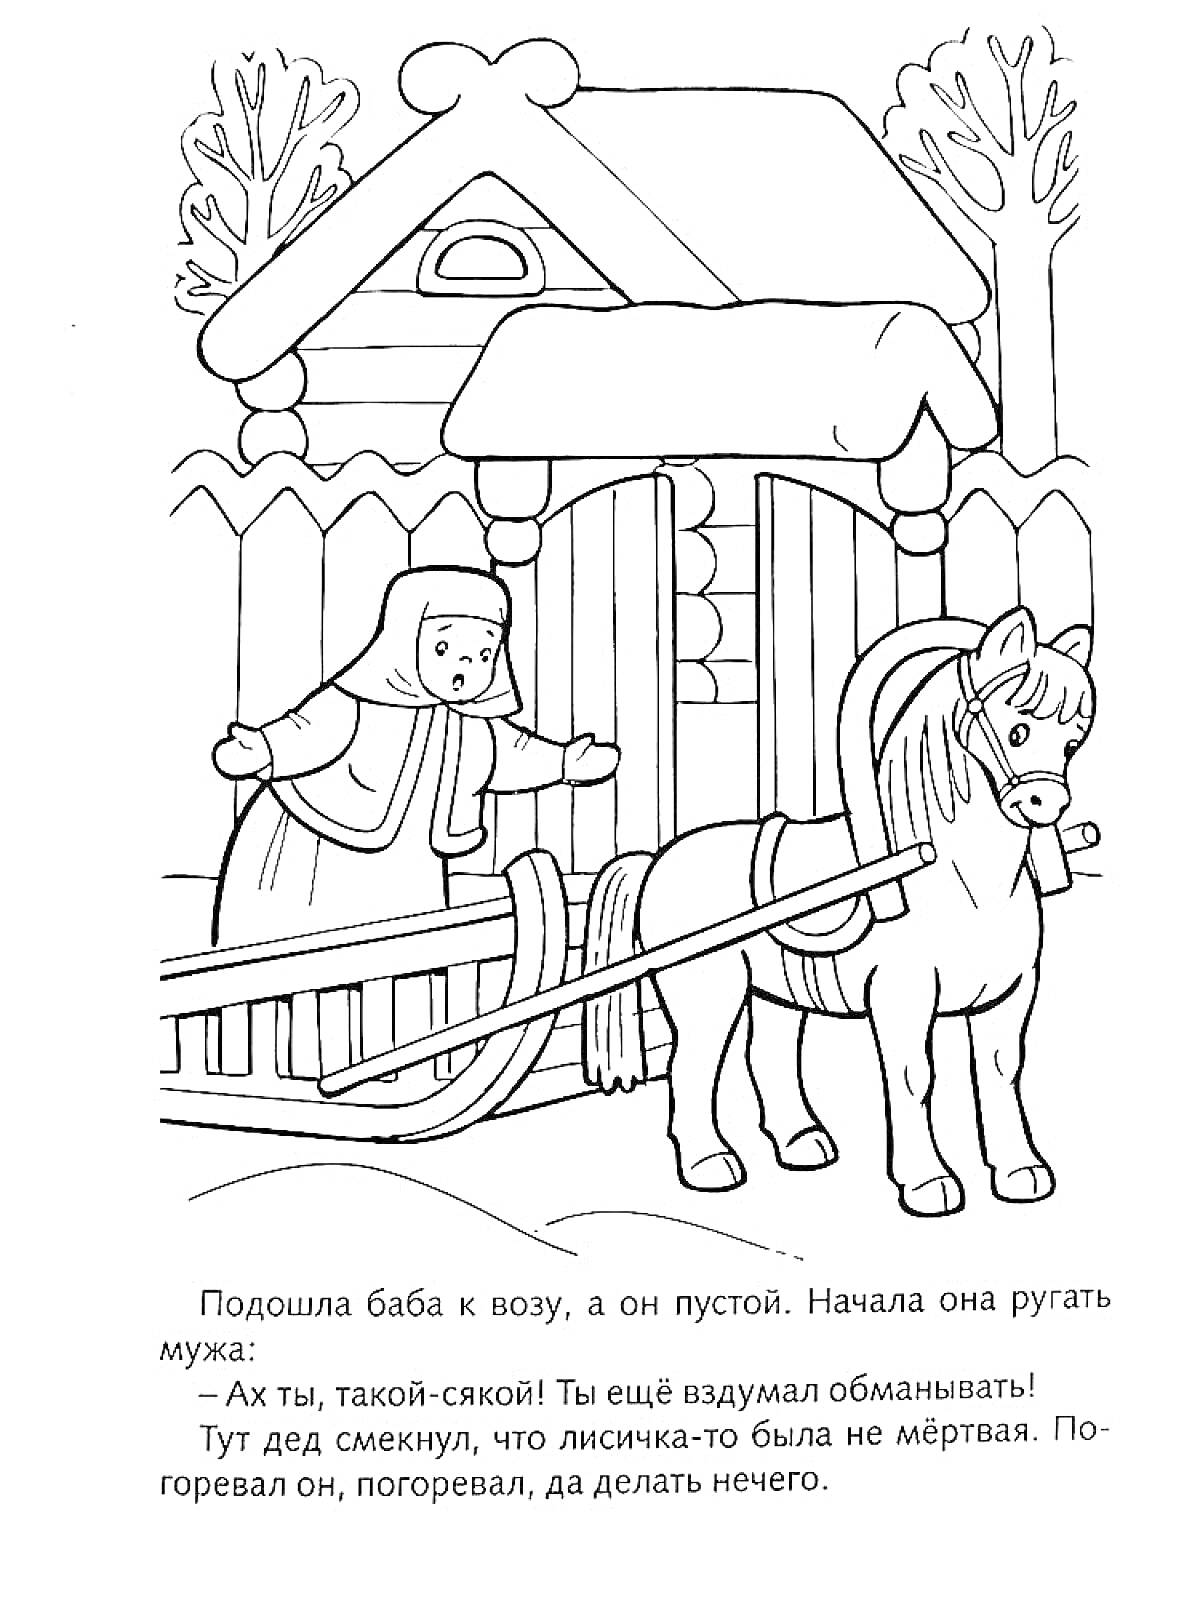 Раскраска Баба у воза с лошадью возле дома и забором на фоне